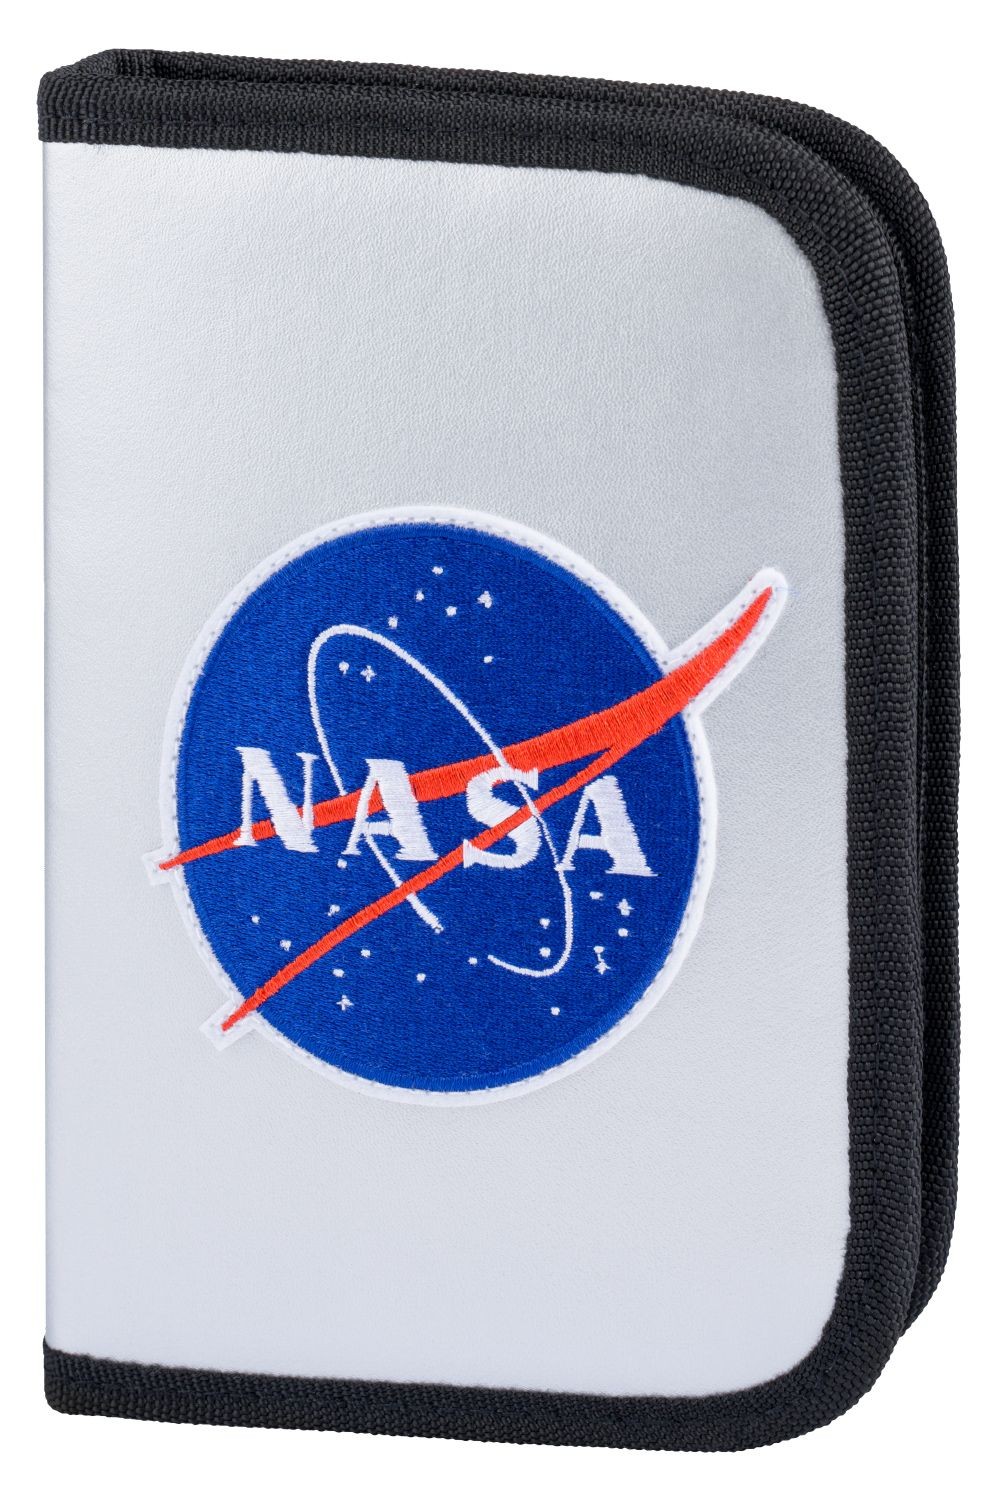 Stříbrný zipový školní penál pro kluky s motivem NASA